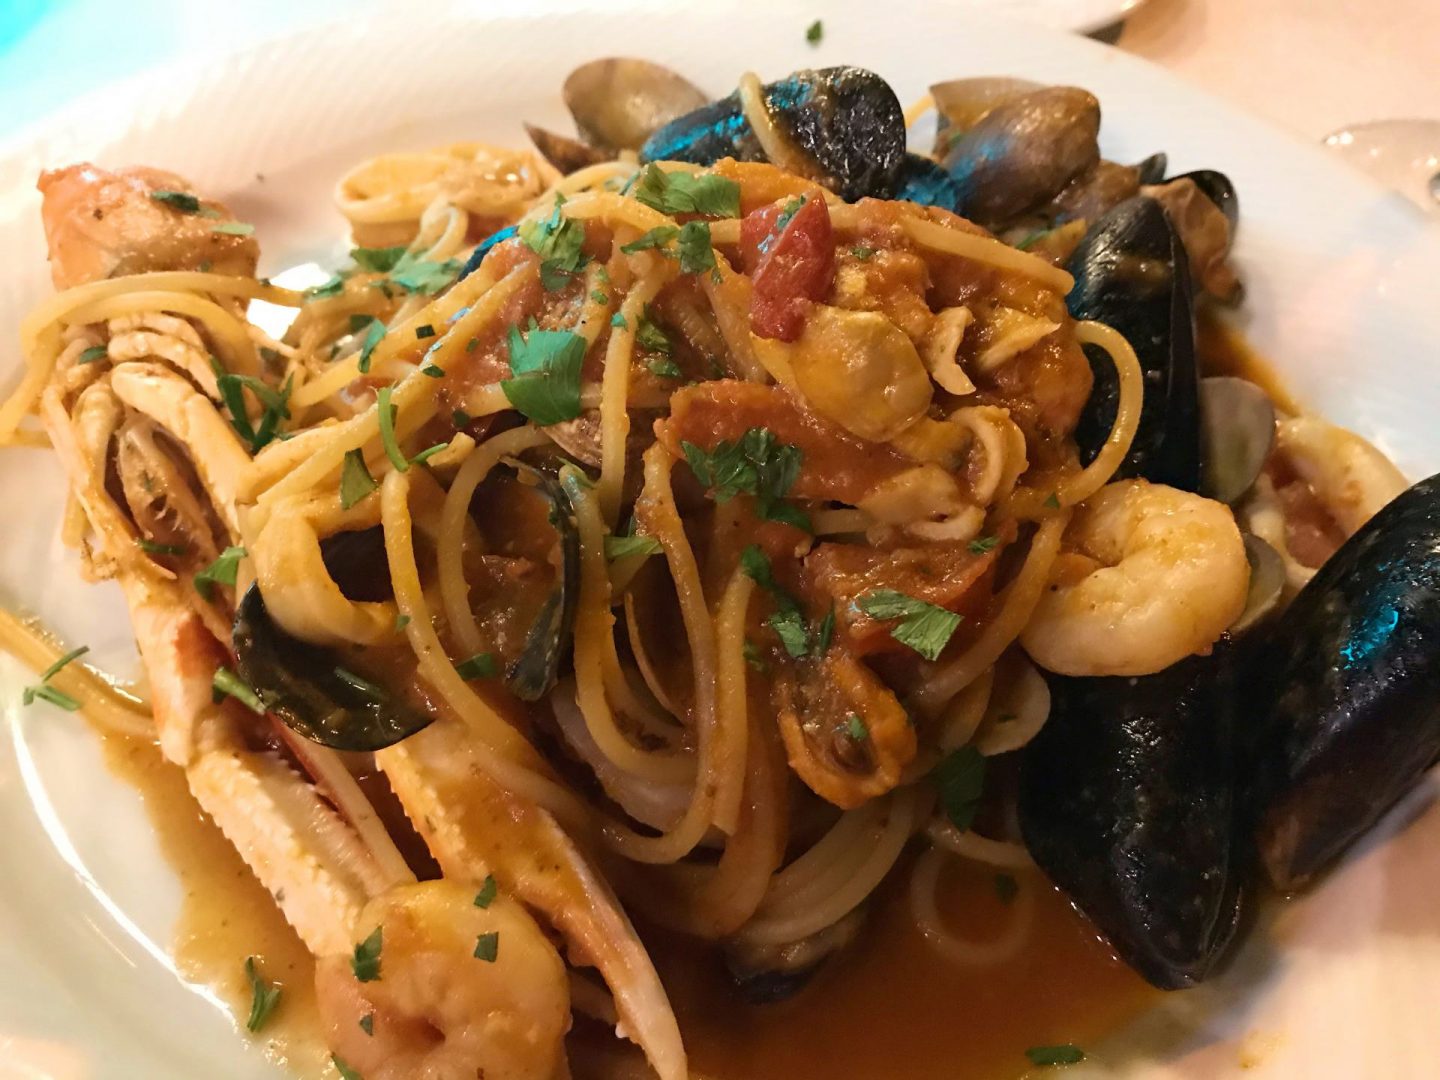 Erfahrung Bewertung Kritik Hotel Brenzone Spaghetti Scoglio Meeresfrüchte Foodblog Sternestulle